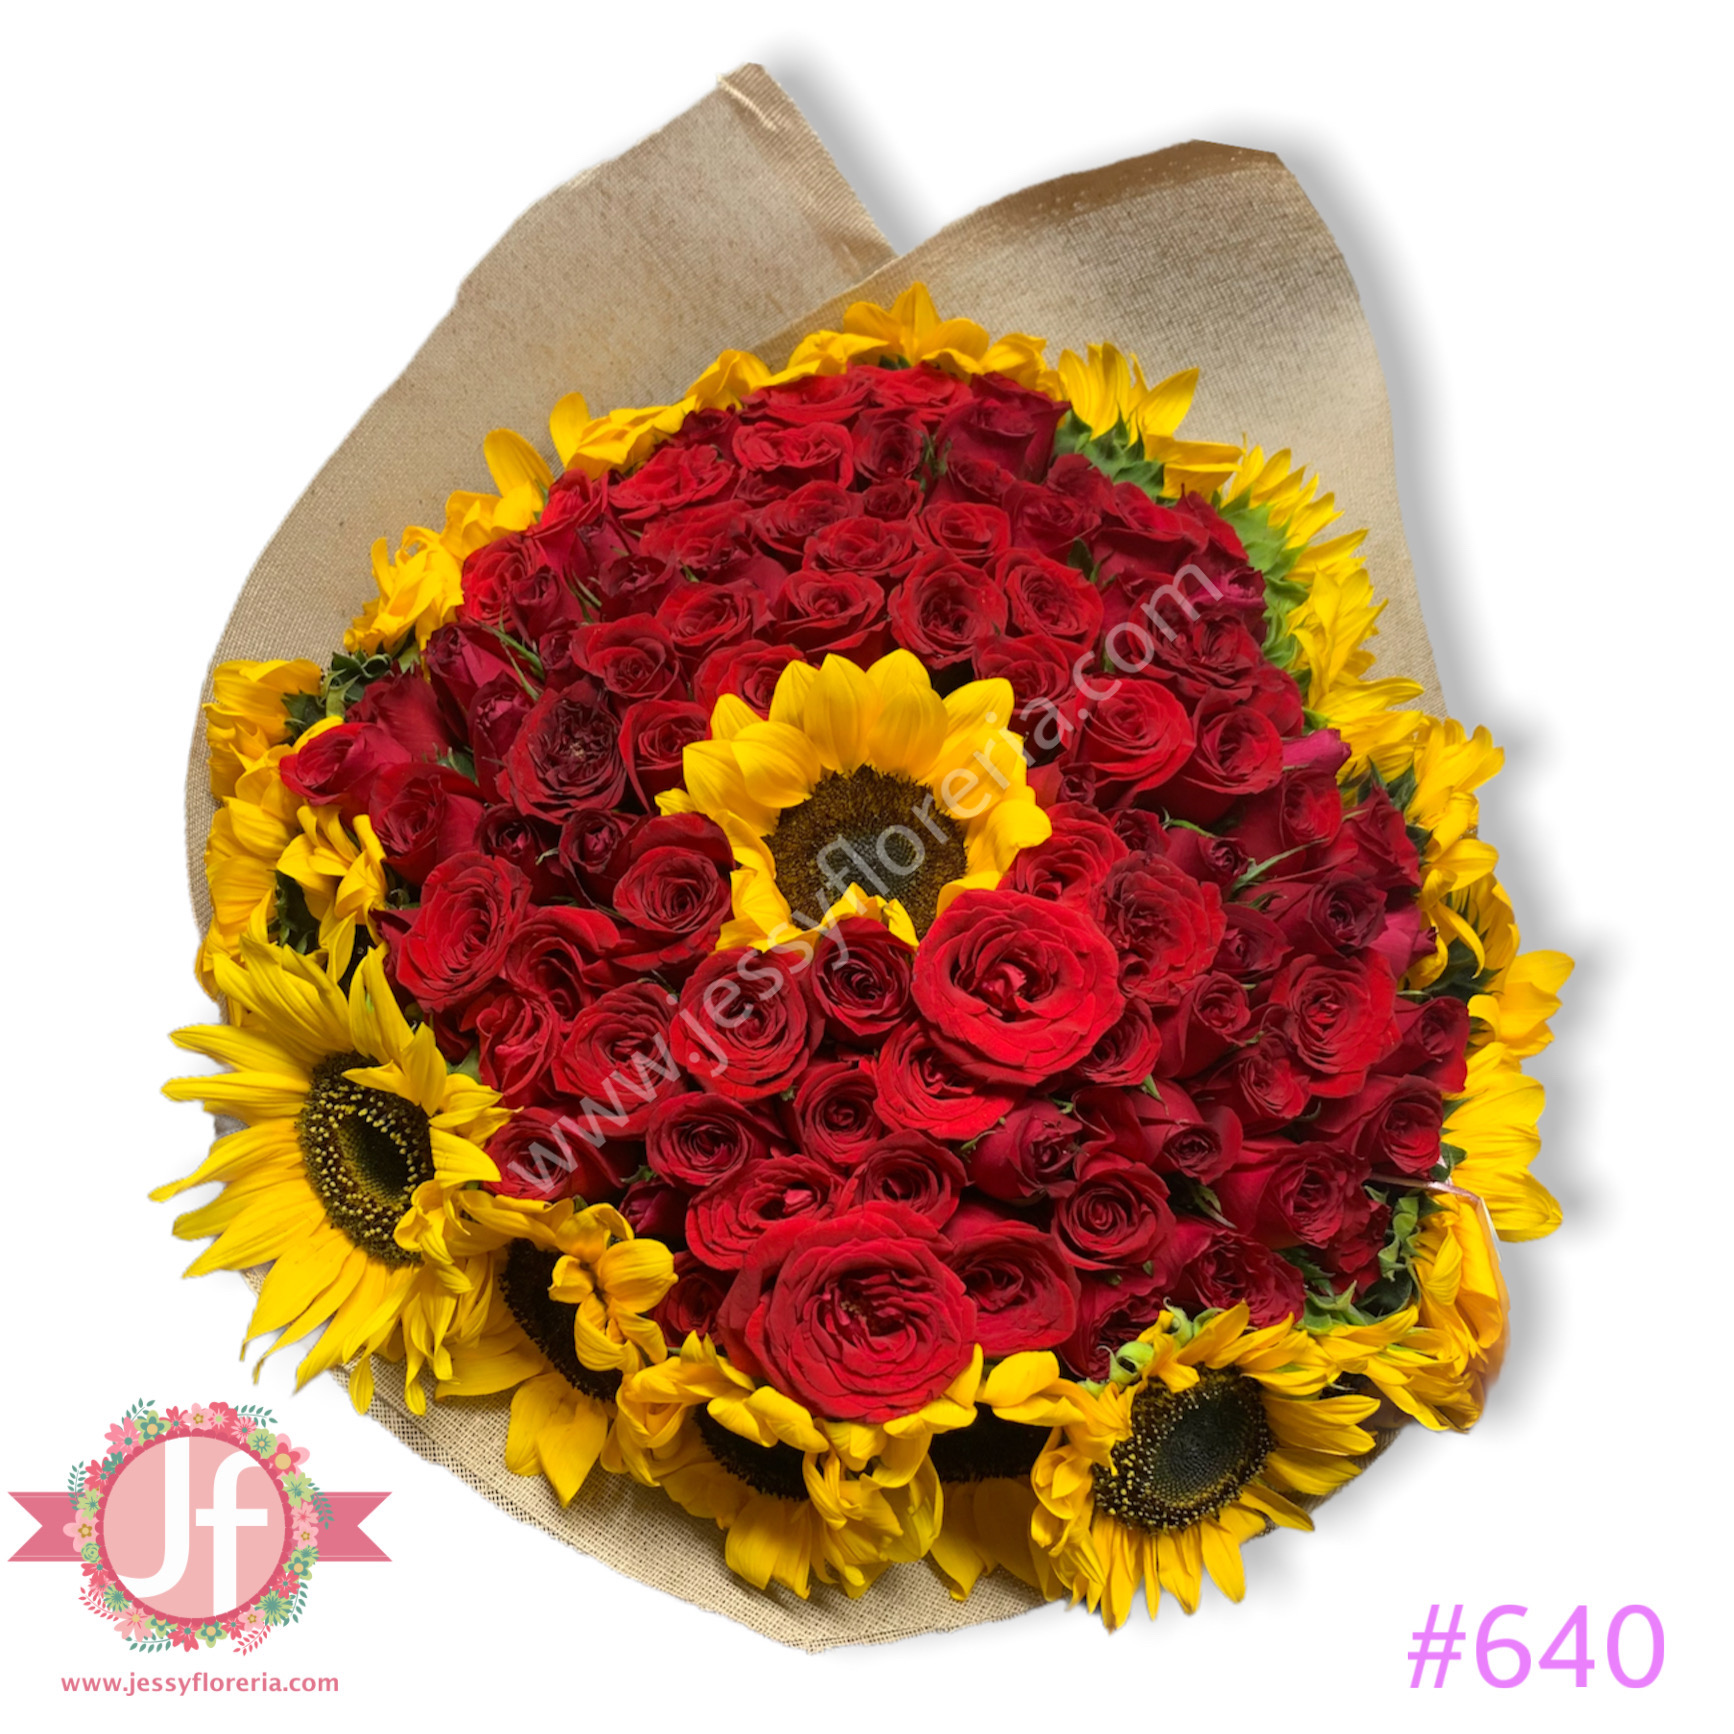 Ramo de 100 rosas y 20 girasoles – Jessy Floreria